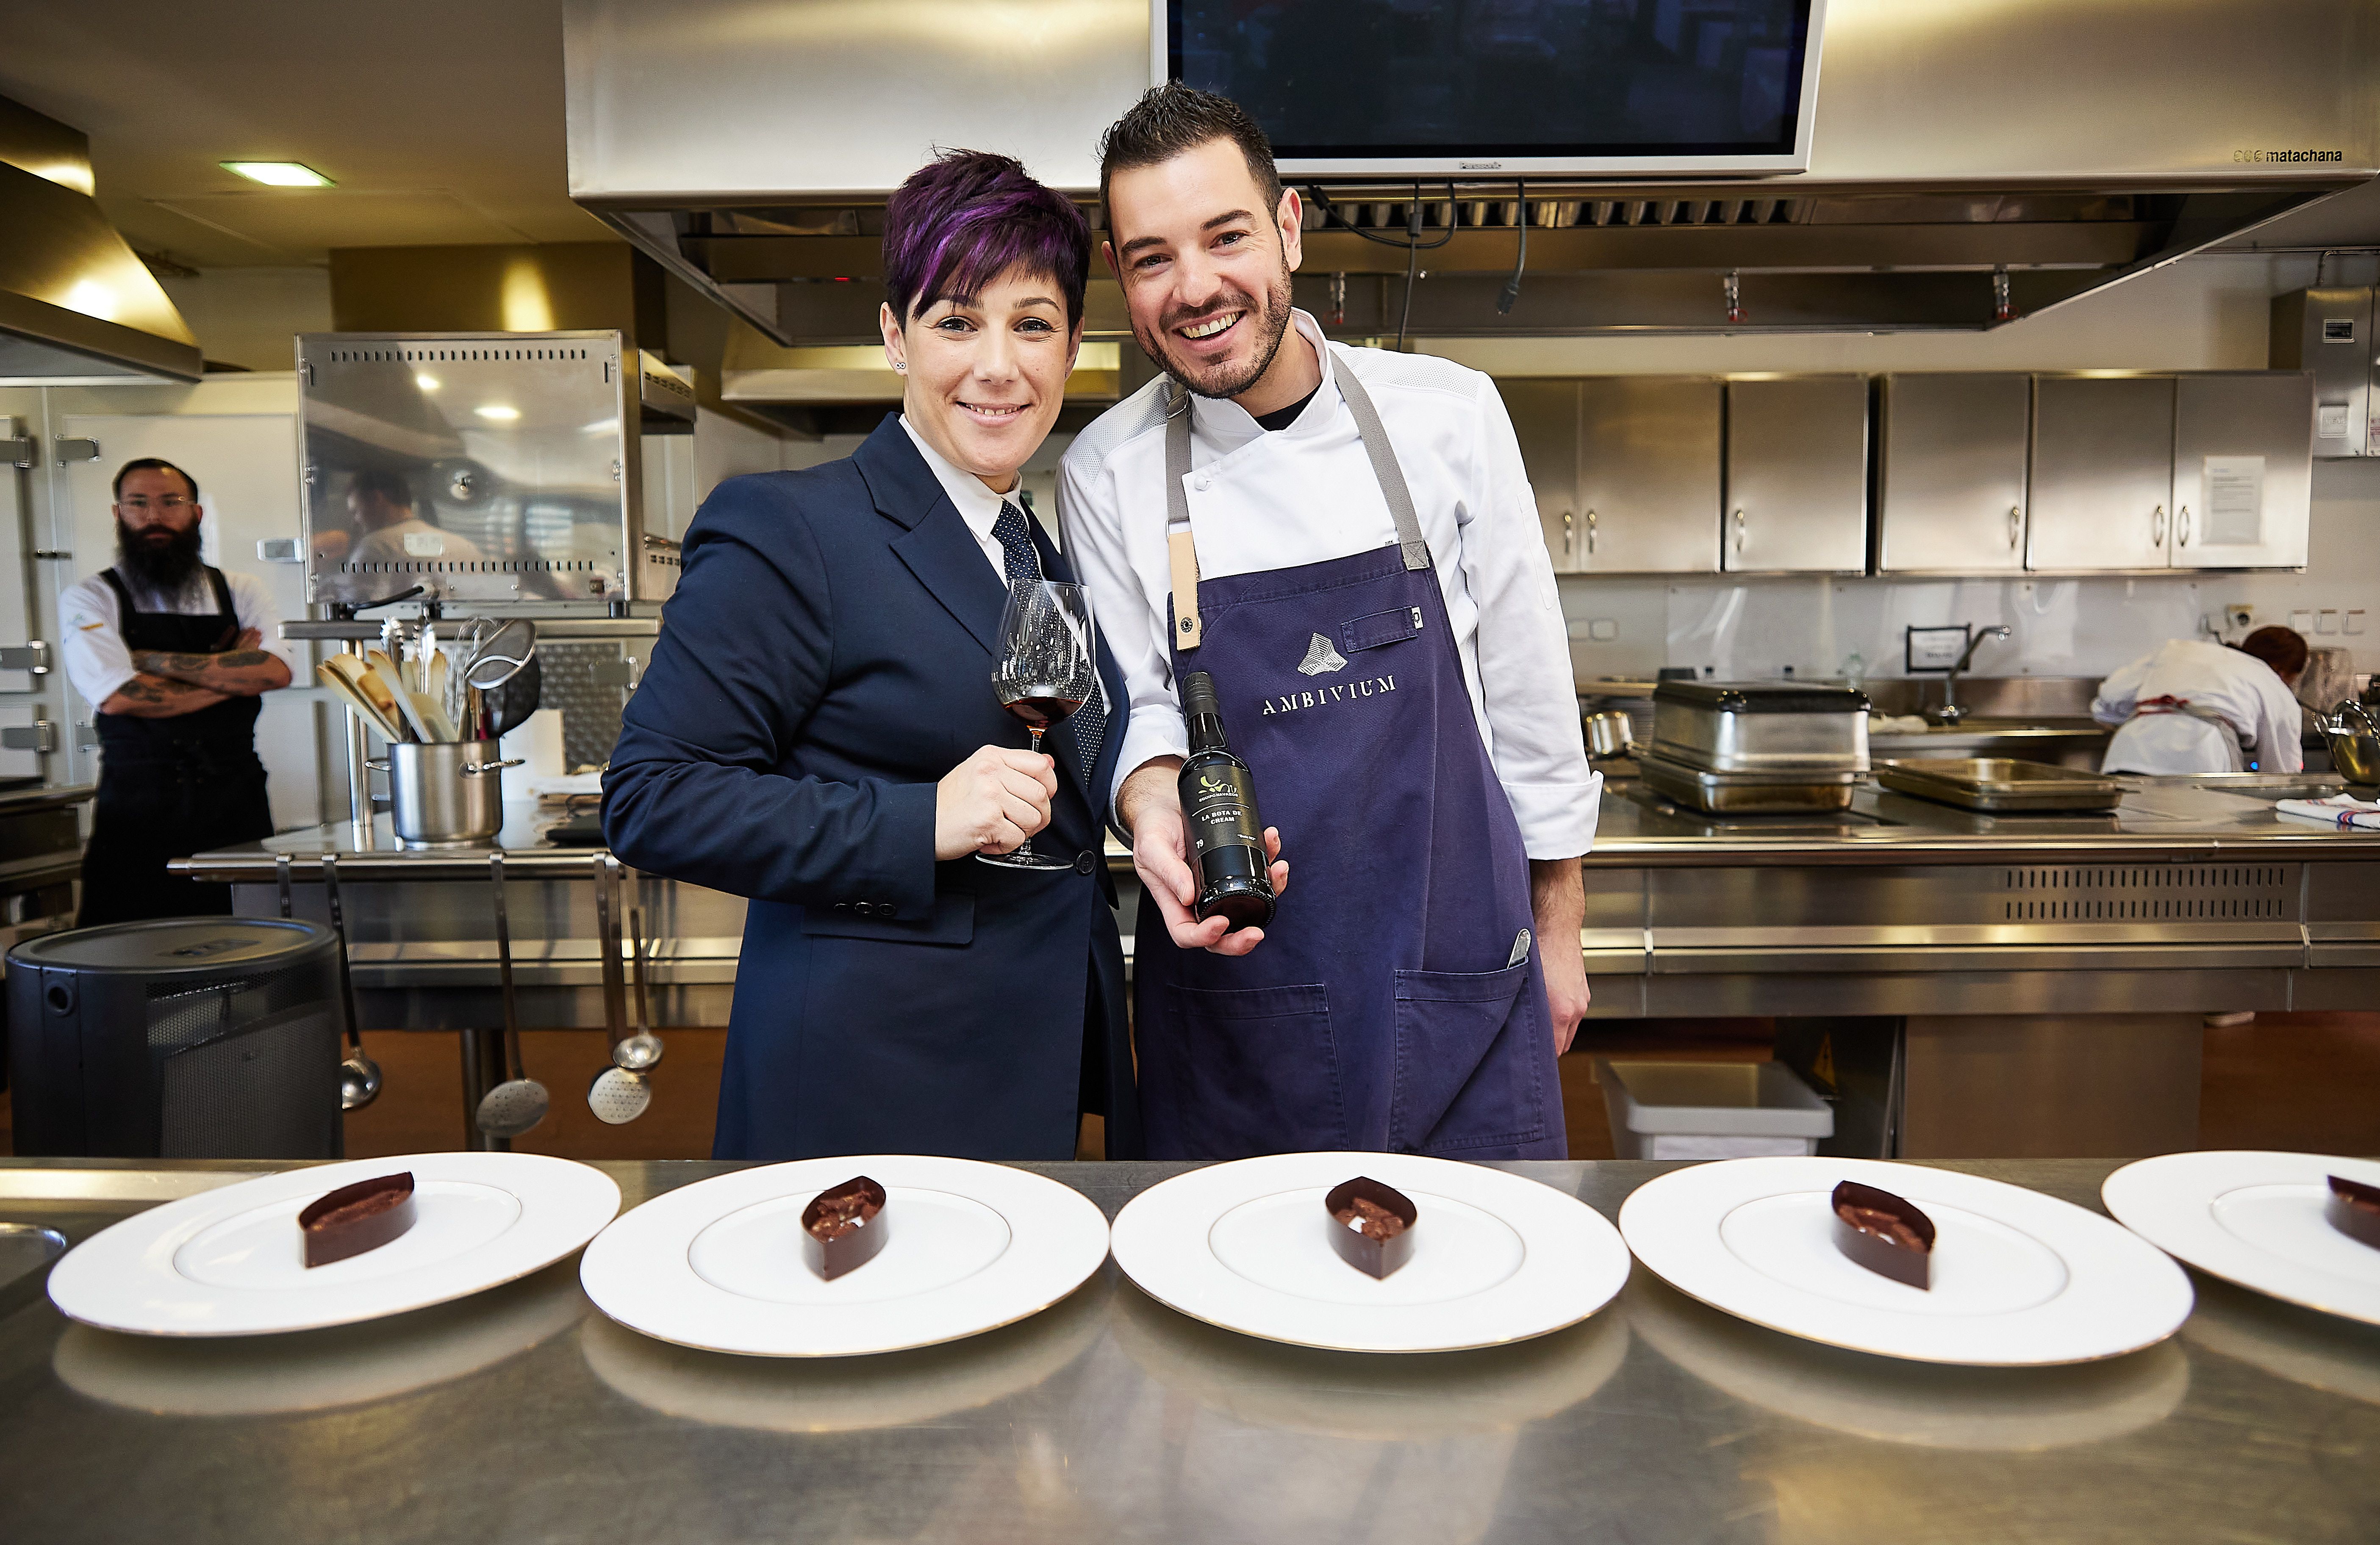 El restaurante Ambivium representará a España en la Final Internacional de Copa Jerez. En la imagen, el chef Cristóbal Muñoz y la sumiller Laura Rodríguez del restaurante tras conocerse la decisión del jurado.